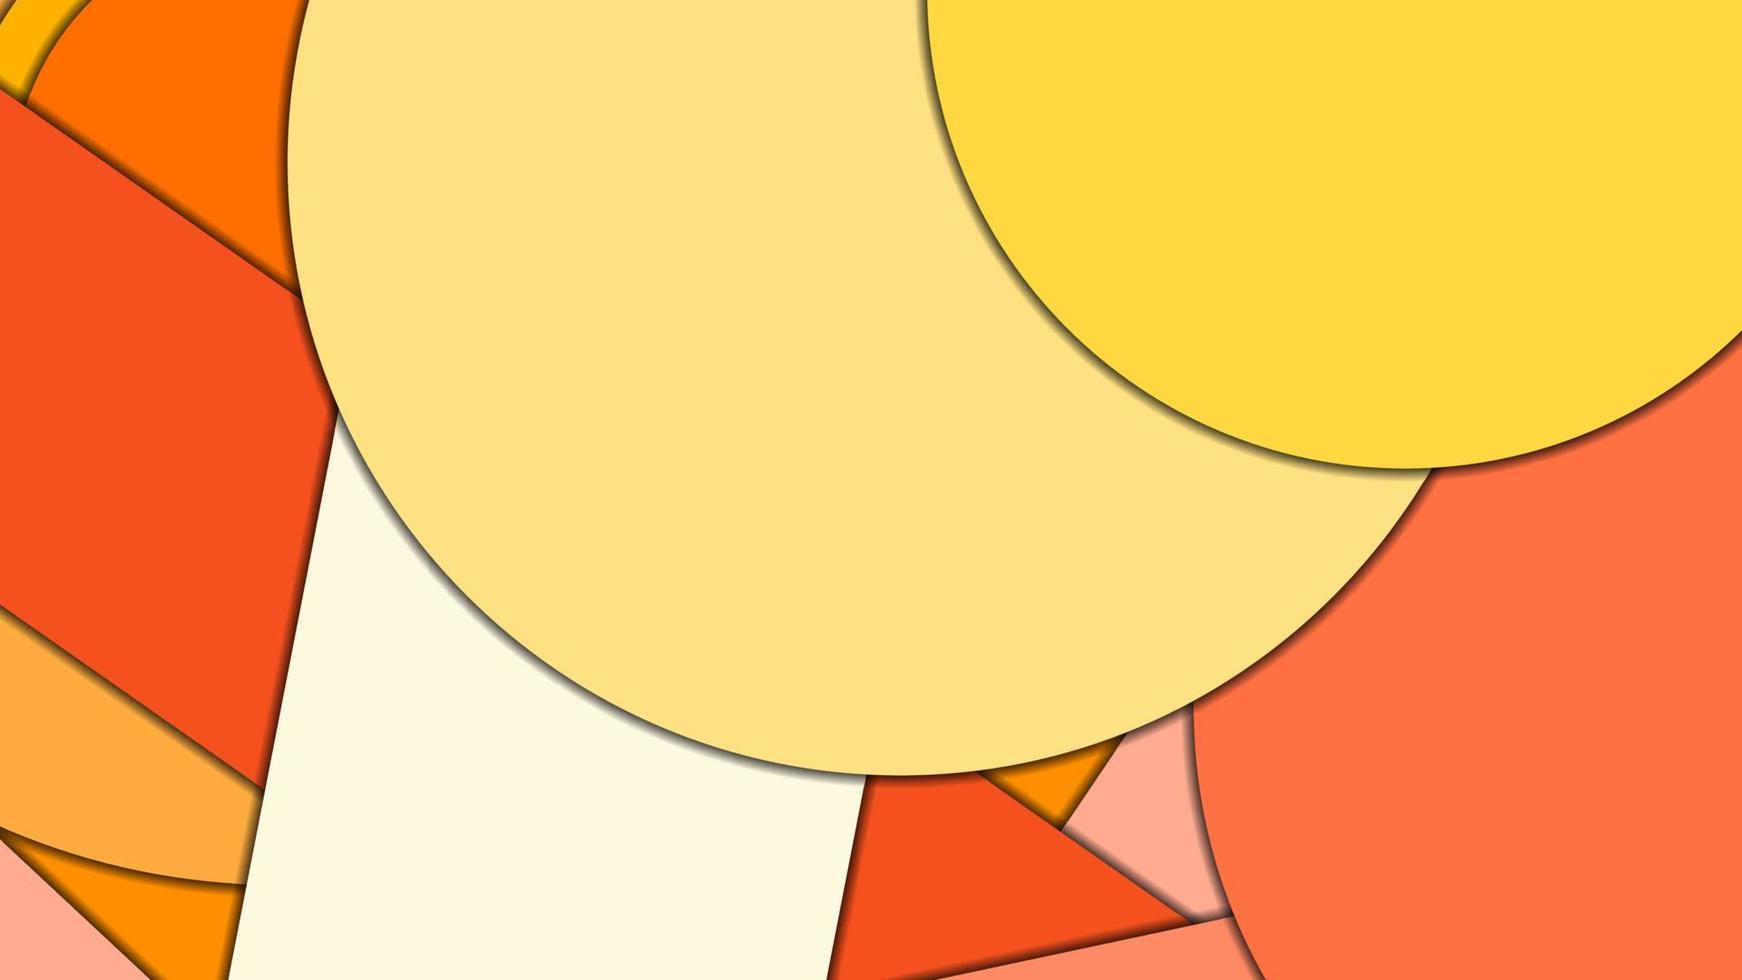 fundo de vetor geométrico abstrato em estilo de design de material com uma paleta harmonizada limitada, com círculos concêntricos e retângulos girados com sombras, imitando papel cortado.